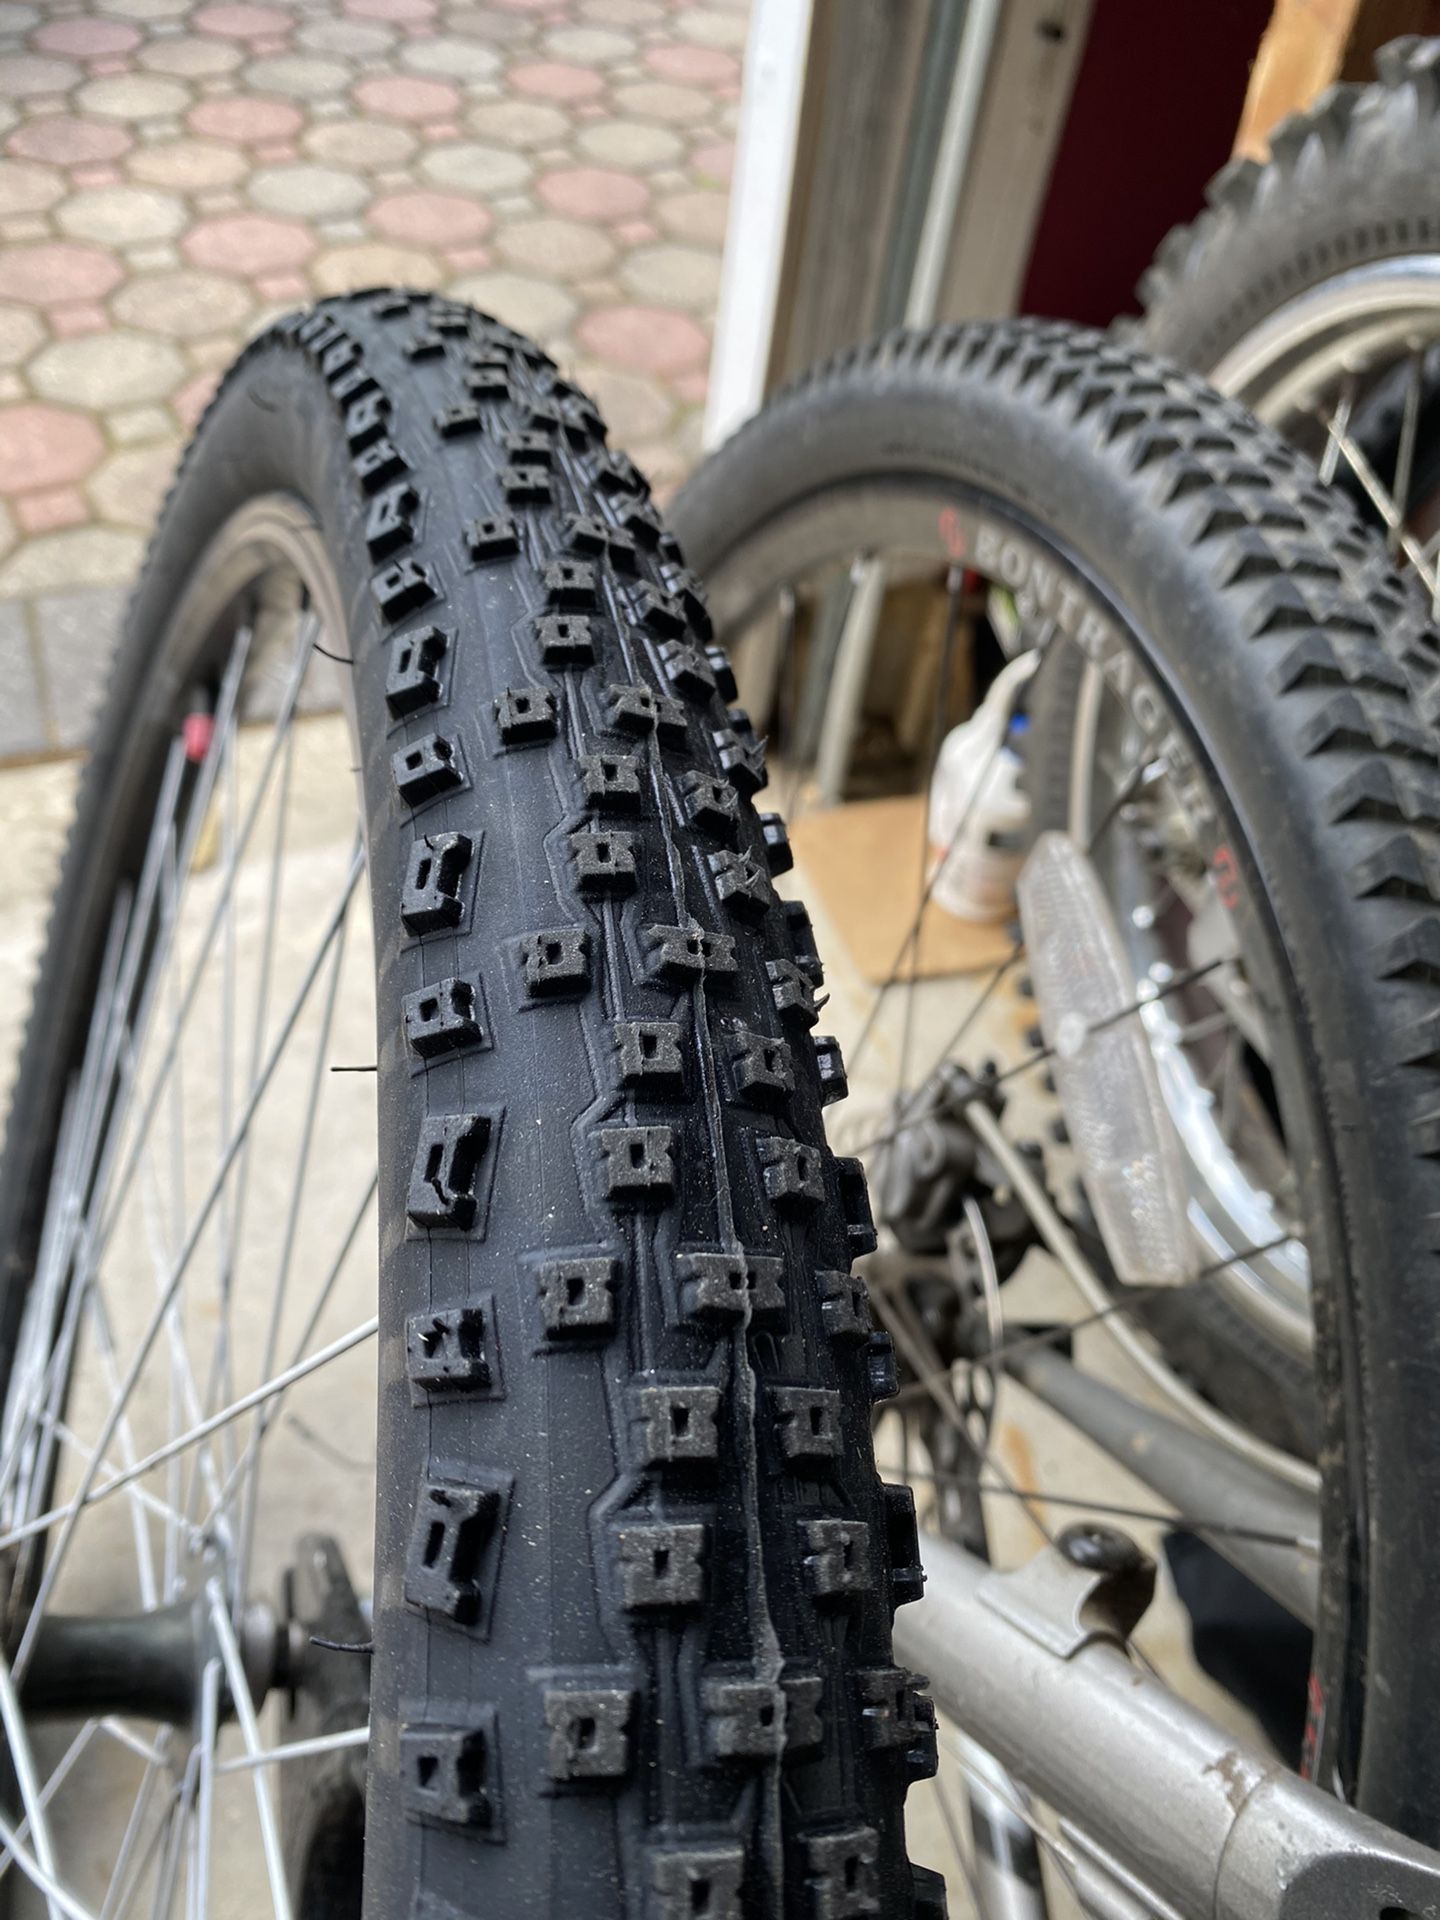 29” bike tire